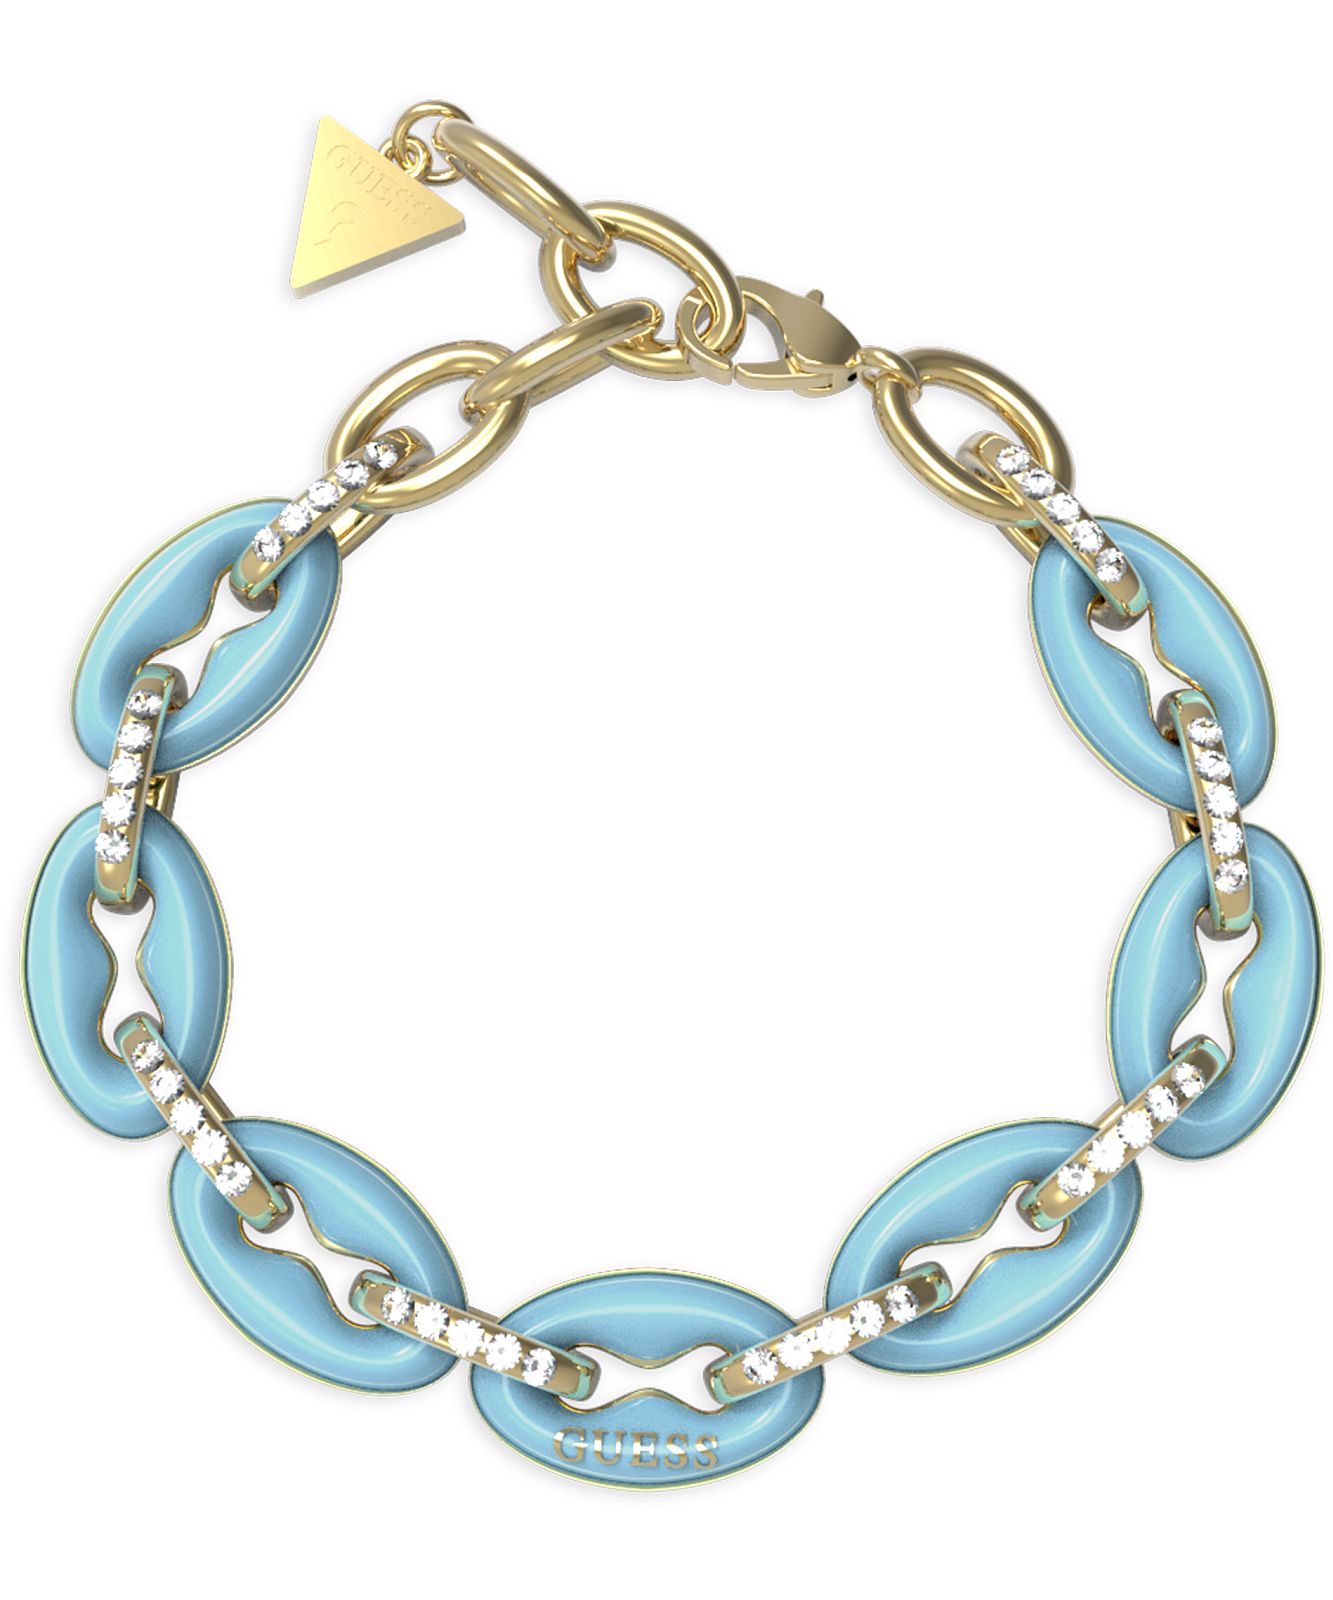 Women's Bracelets - Παπασωτηρίου jewelry